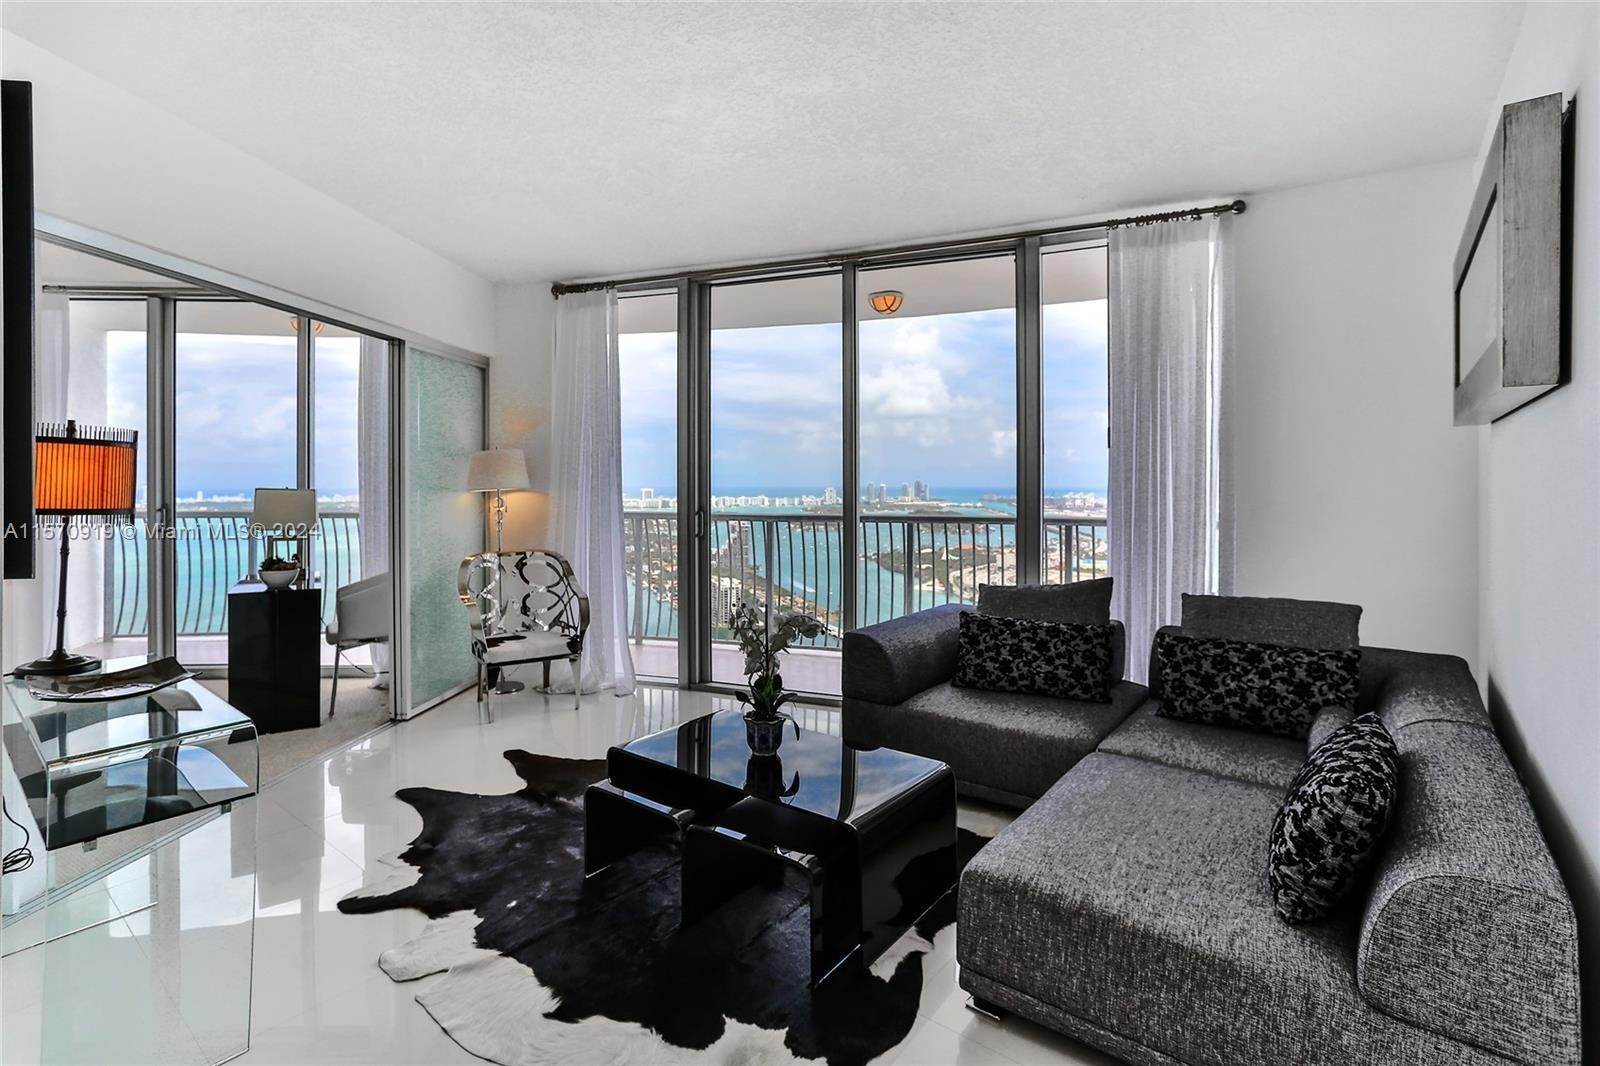 Condominium at Edgewater, Miami, FL 33132